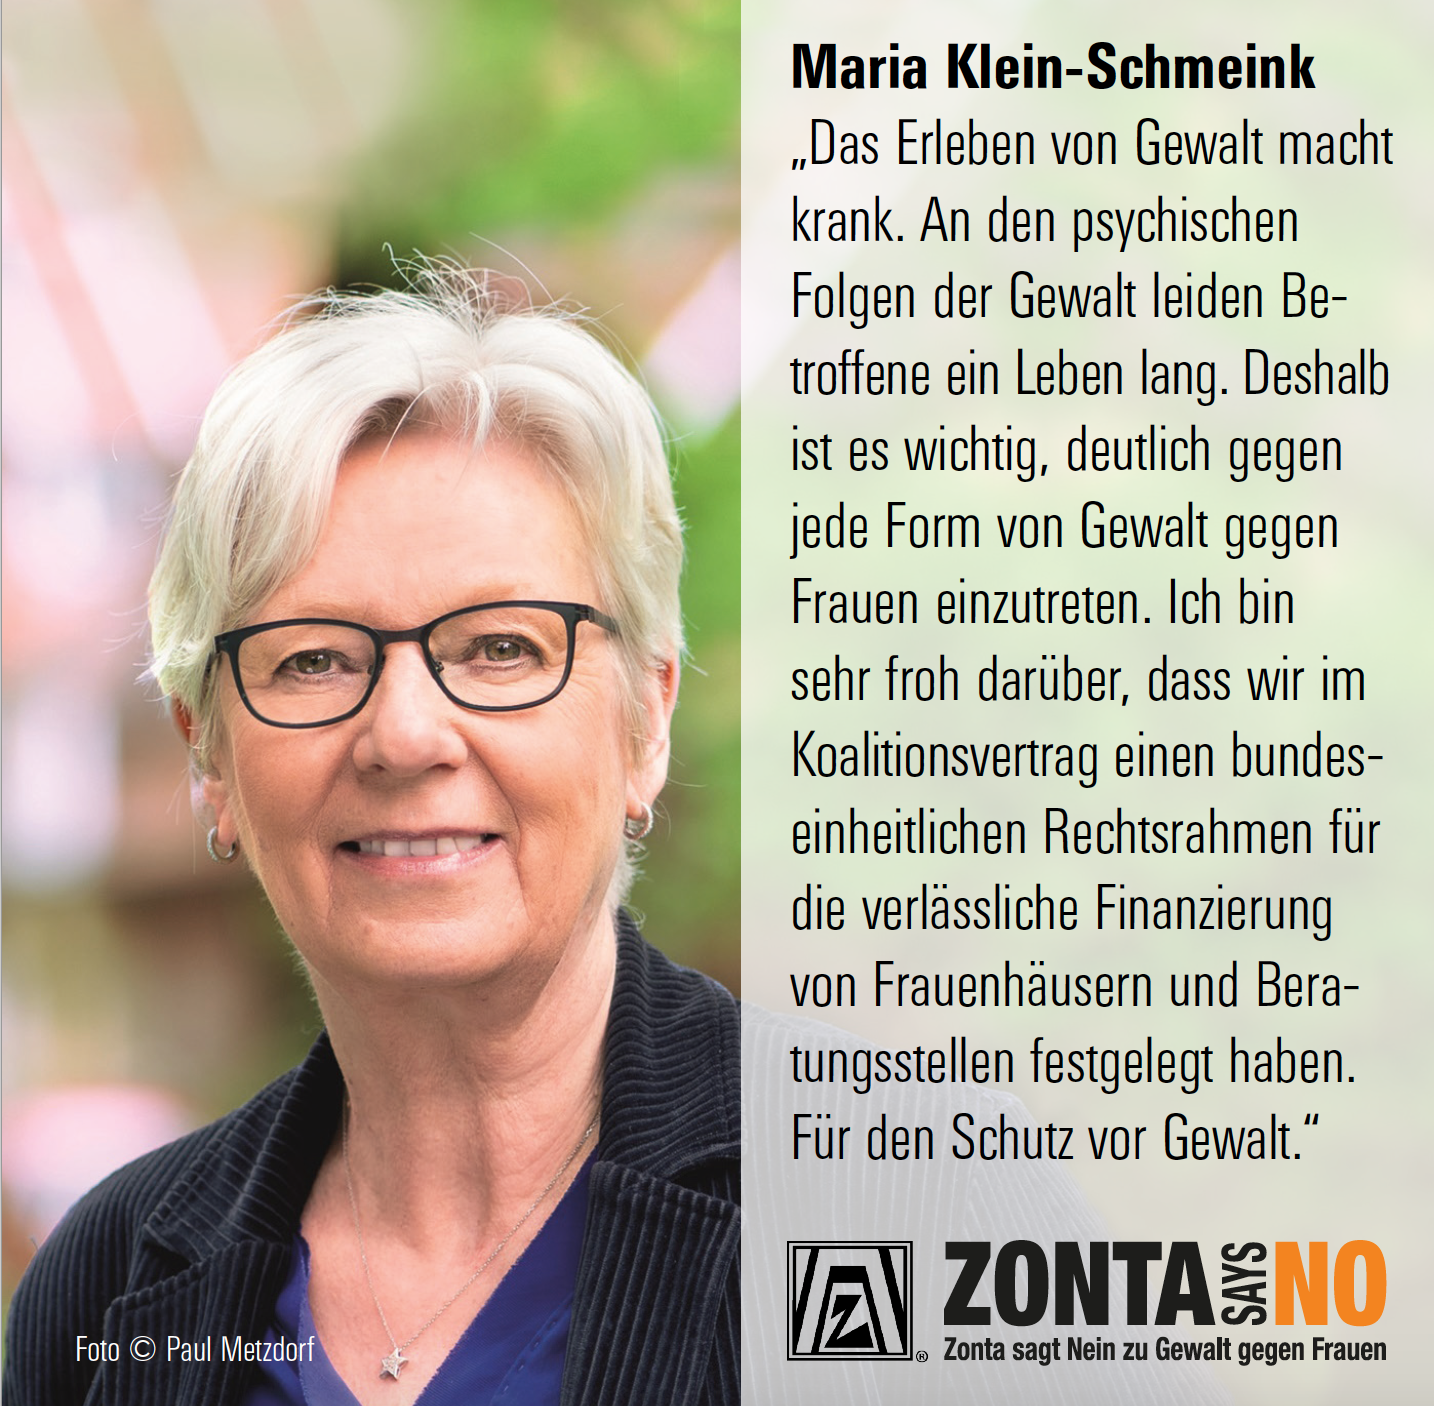 Maria Klein-Schmeink © Paul Metzdorf